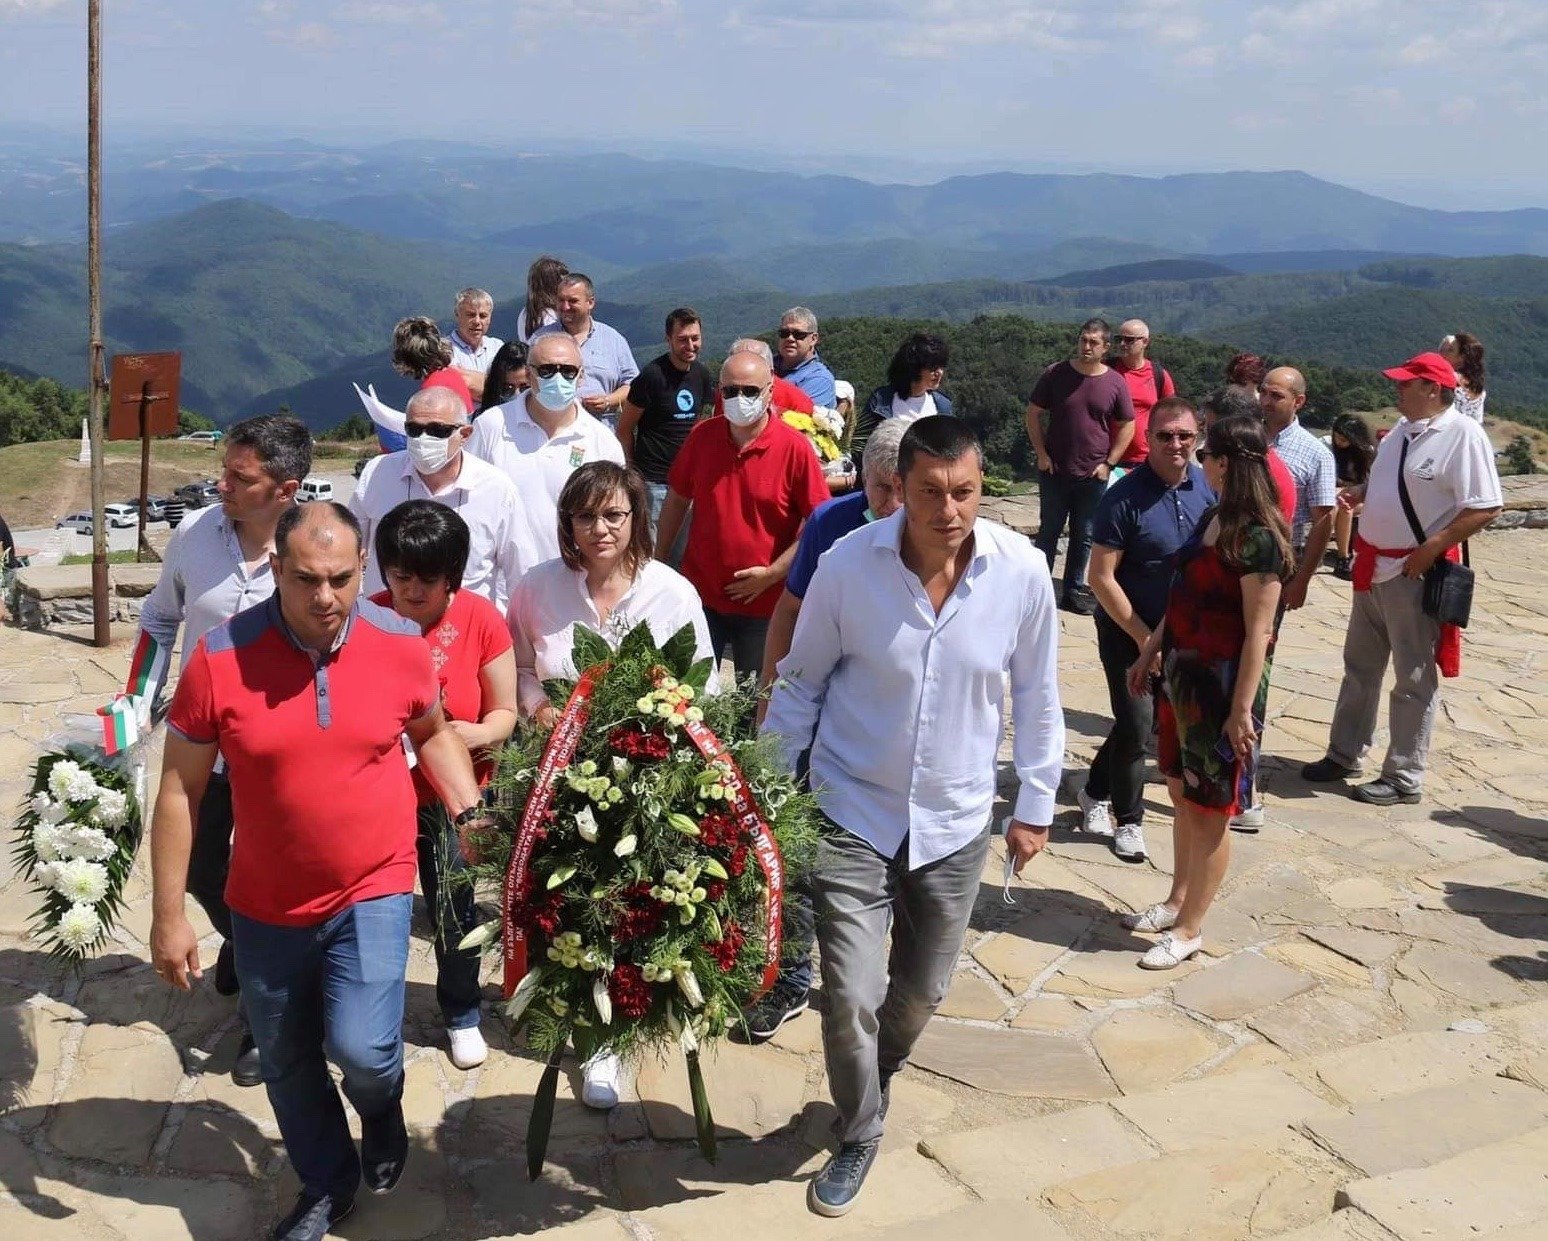 Шипка е най-високият връх на българското достойнство“, написа в страницата